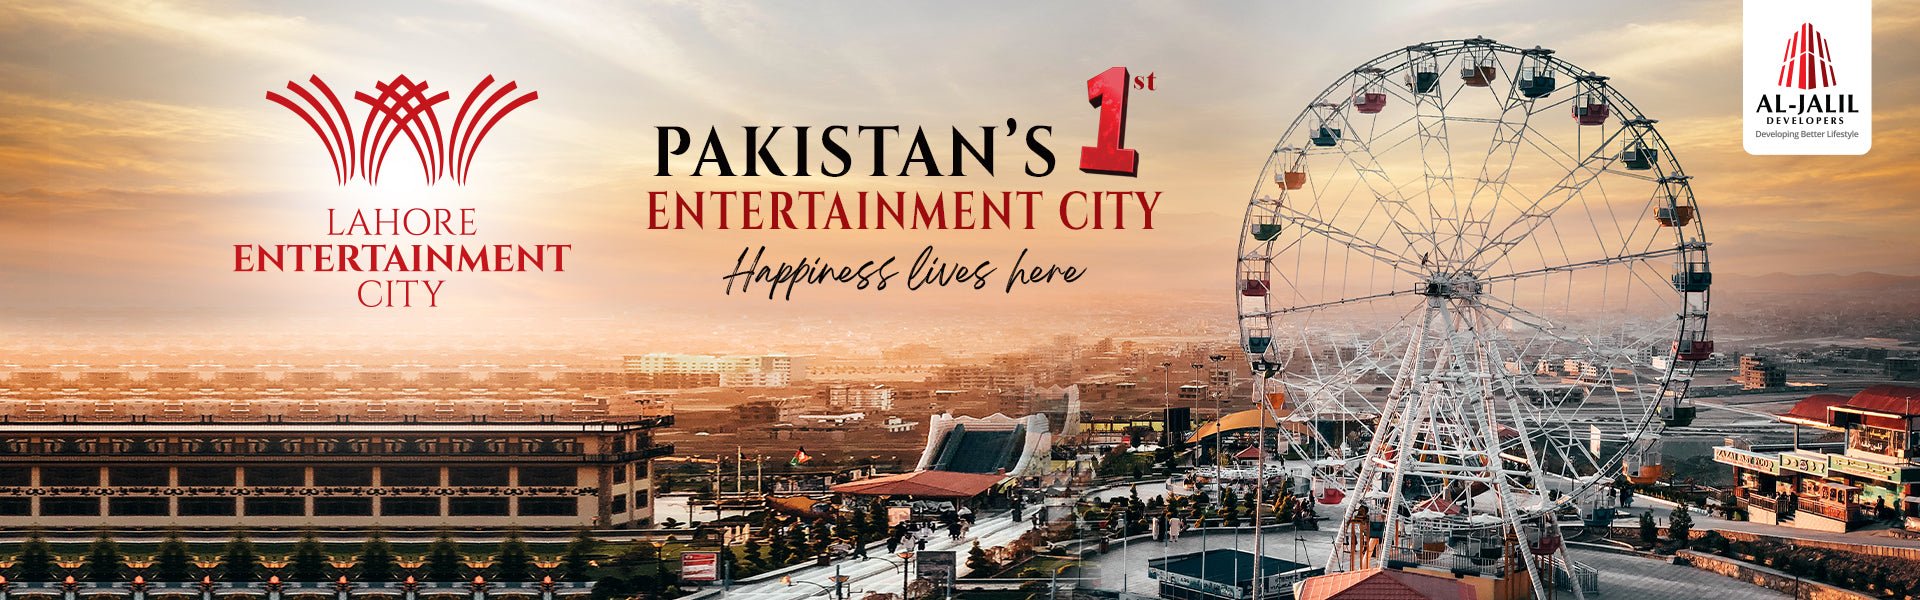 Lahore Entertainment City- Pakistan’s 1st Entertainment City